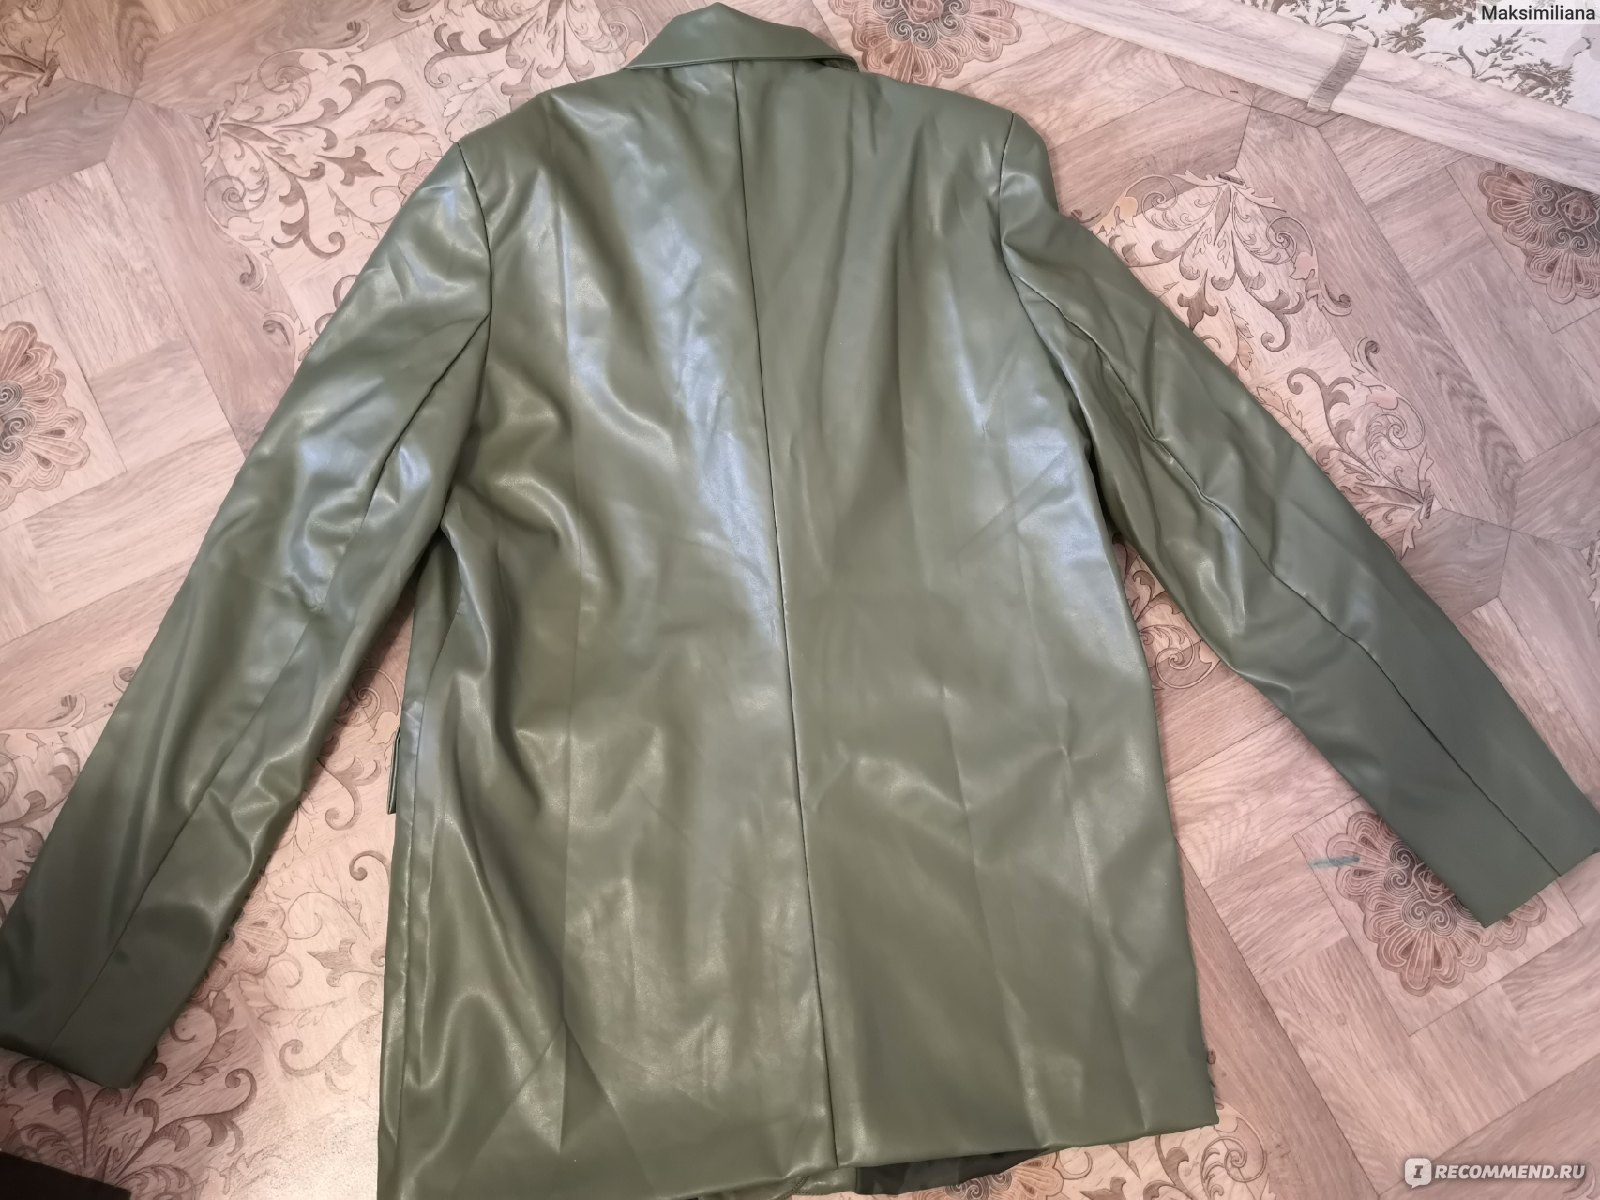 Пиджак Martichelli 4661 КОЖАНЫЙ ОЛИВКОВЫЙ - «Тренд последних нескольких лет- пиджак из эко-кожи. Как я планирую носить его этой весной, самыевыигрышные образы и сочетания с одеждой из гардероба»